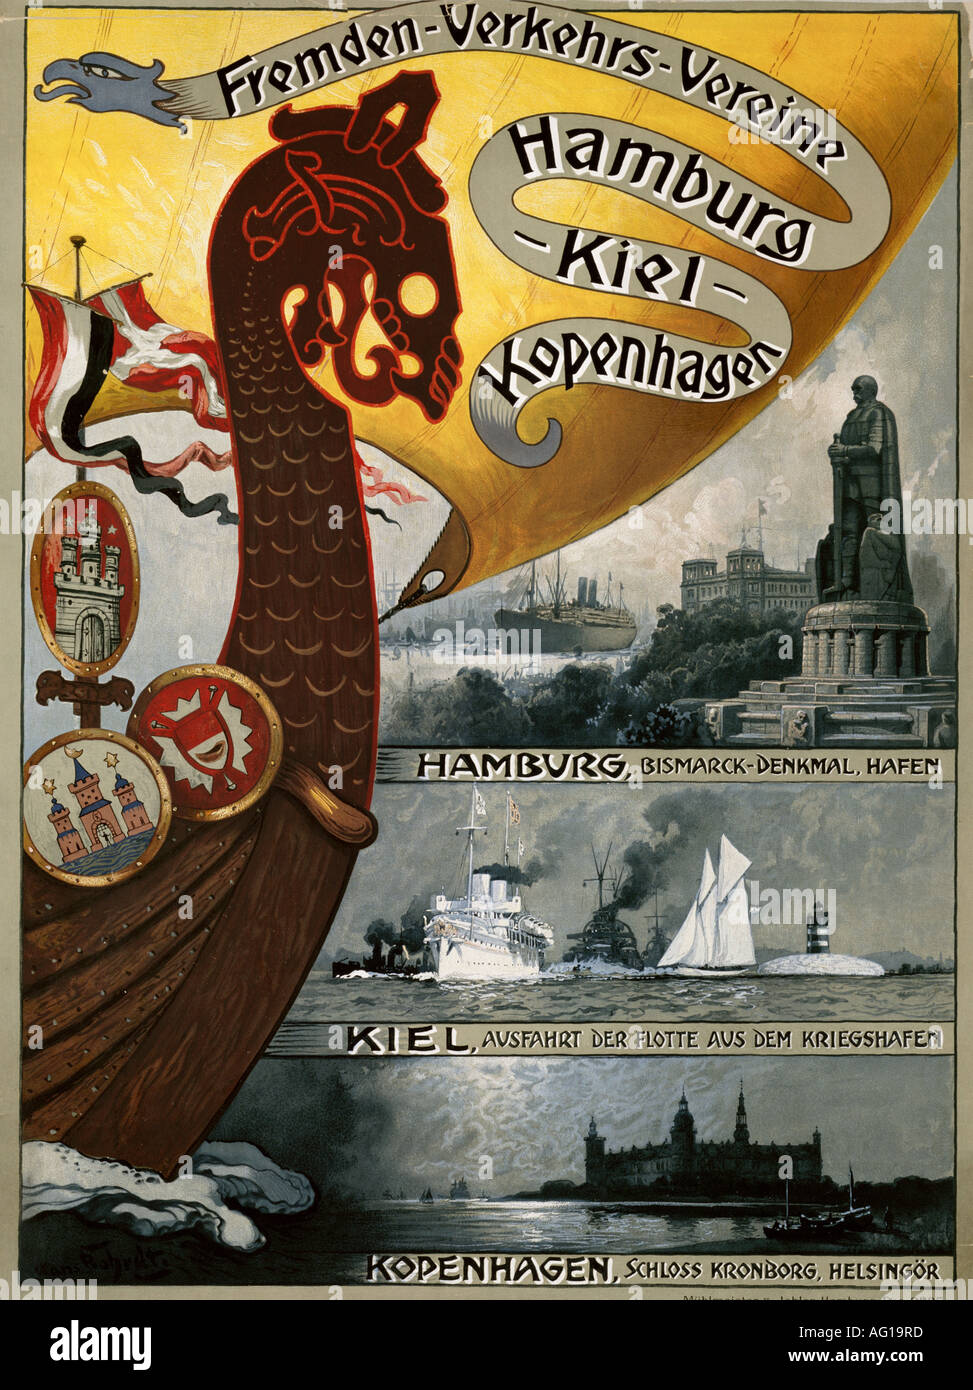 Pubblicità, turismo, Fremden - Verkehrs - Vereine Hamburg - Kiel - Kopenhagen, Hamburg, circa 1910, Foto Stock